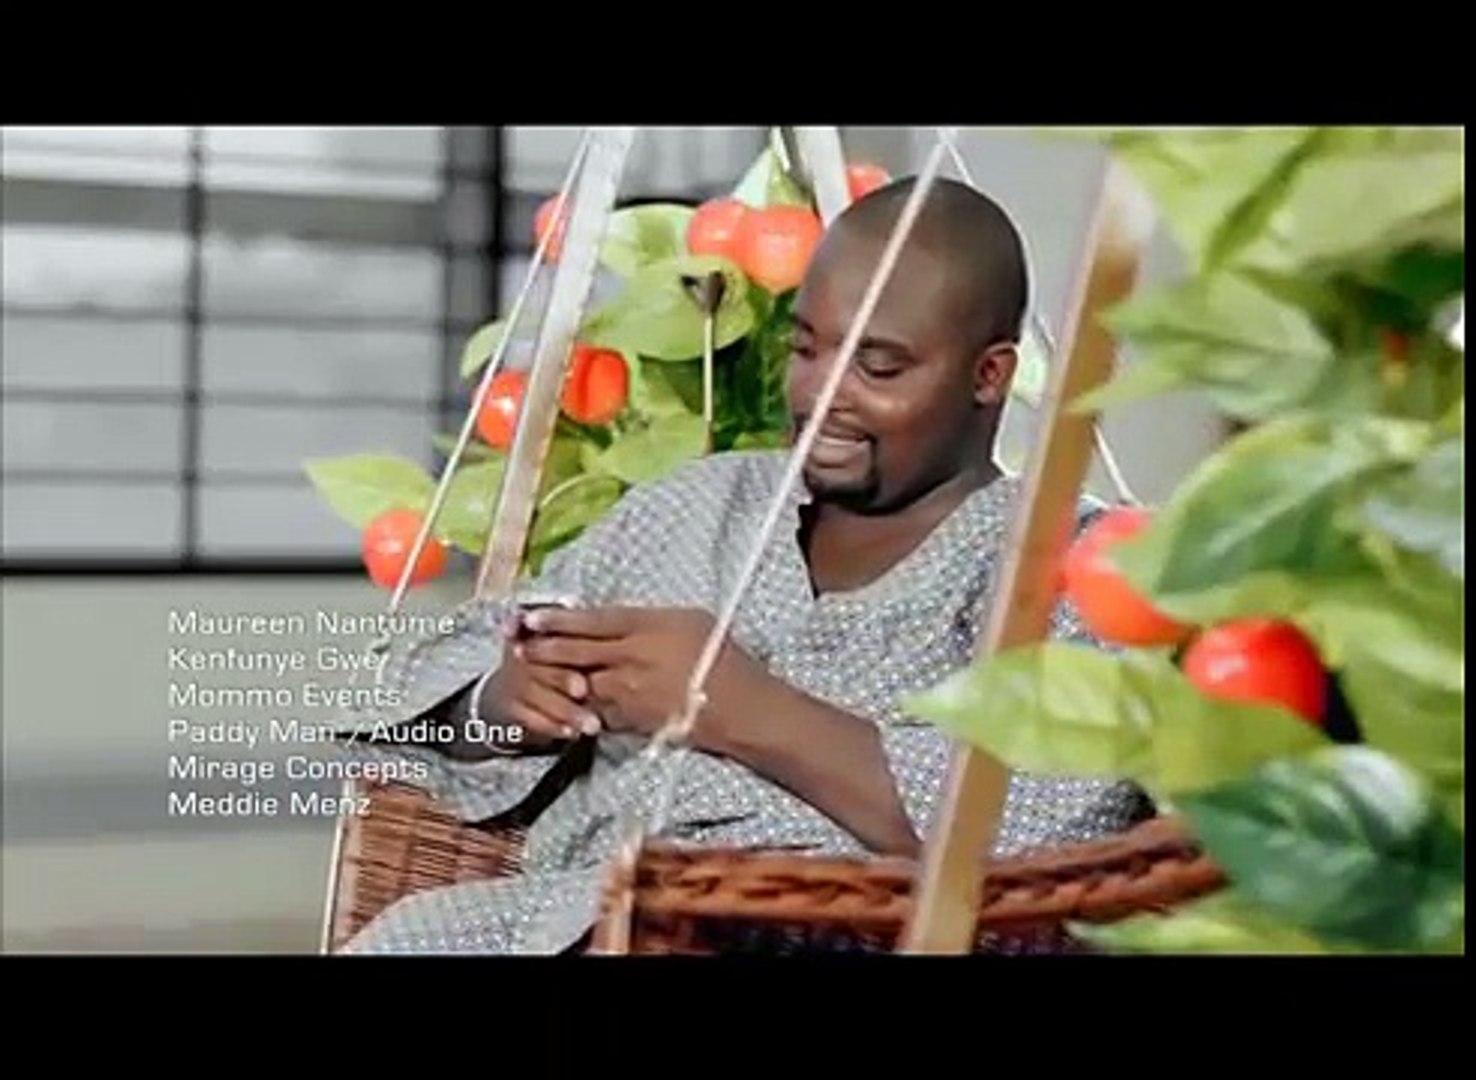 Maureen Nantume - Kenfunye Gwe (Ugandan Music Video)